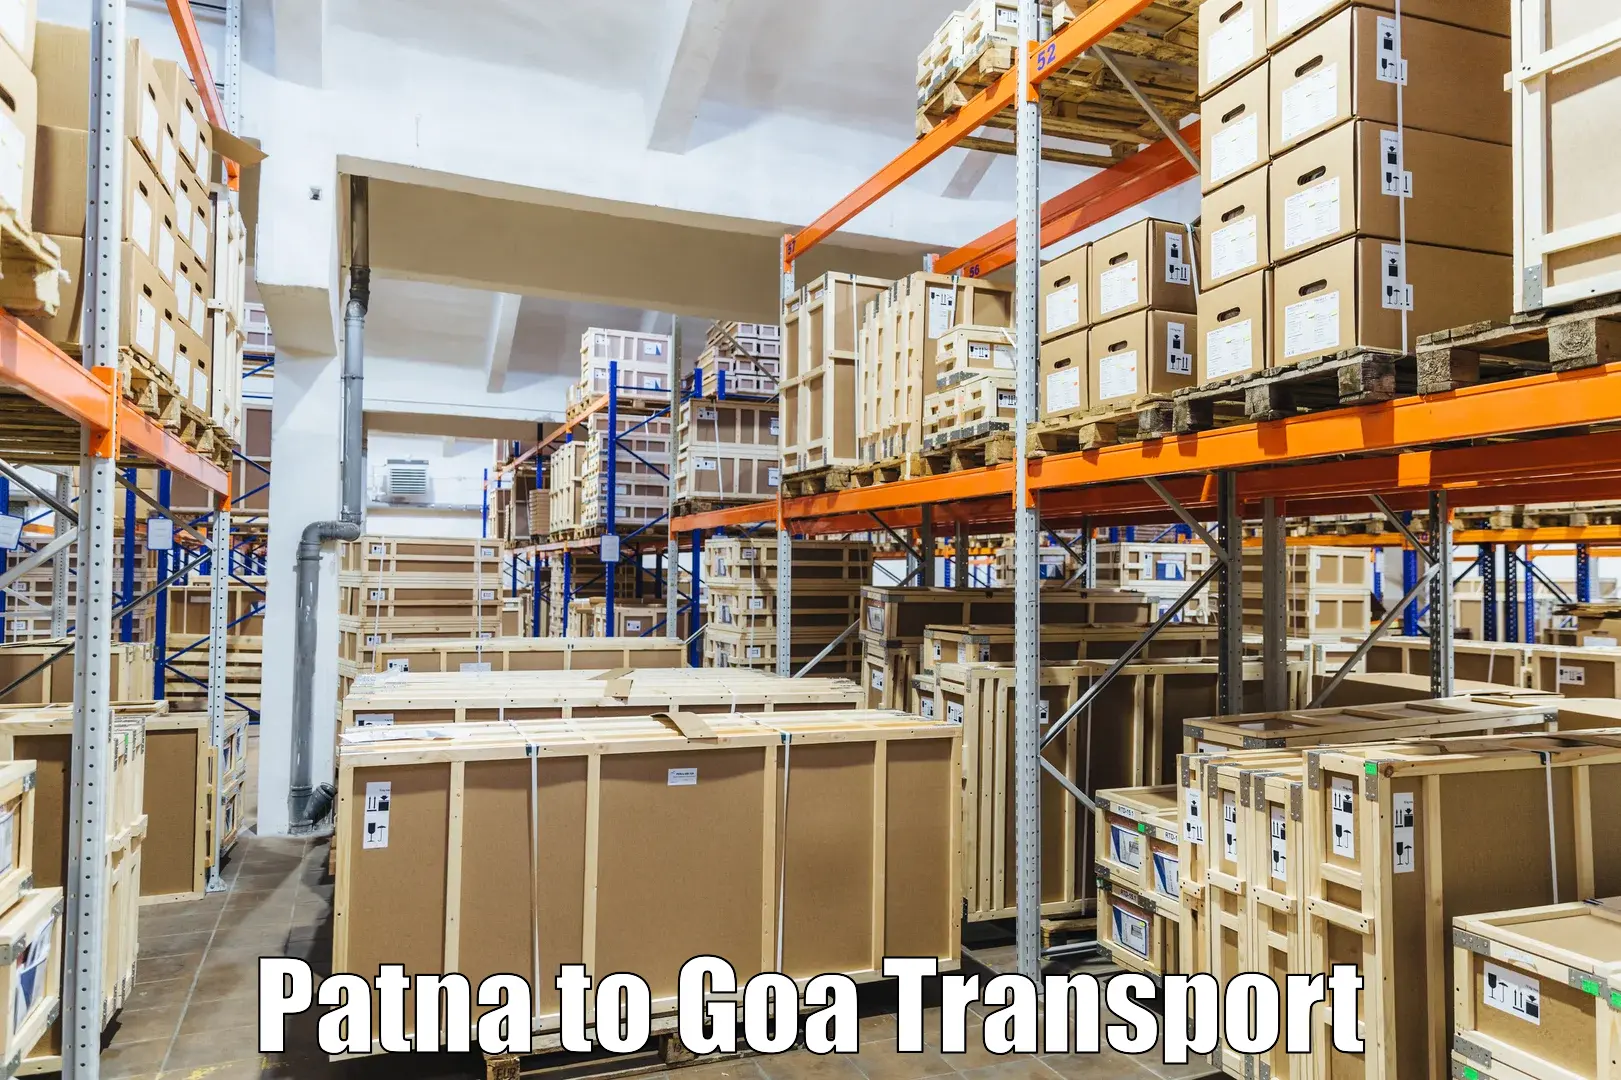 Land transport services Patna to Bardez